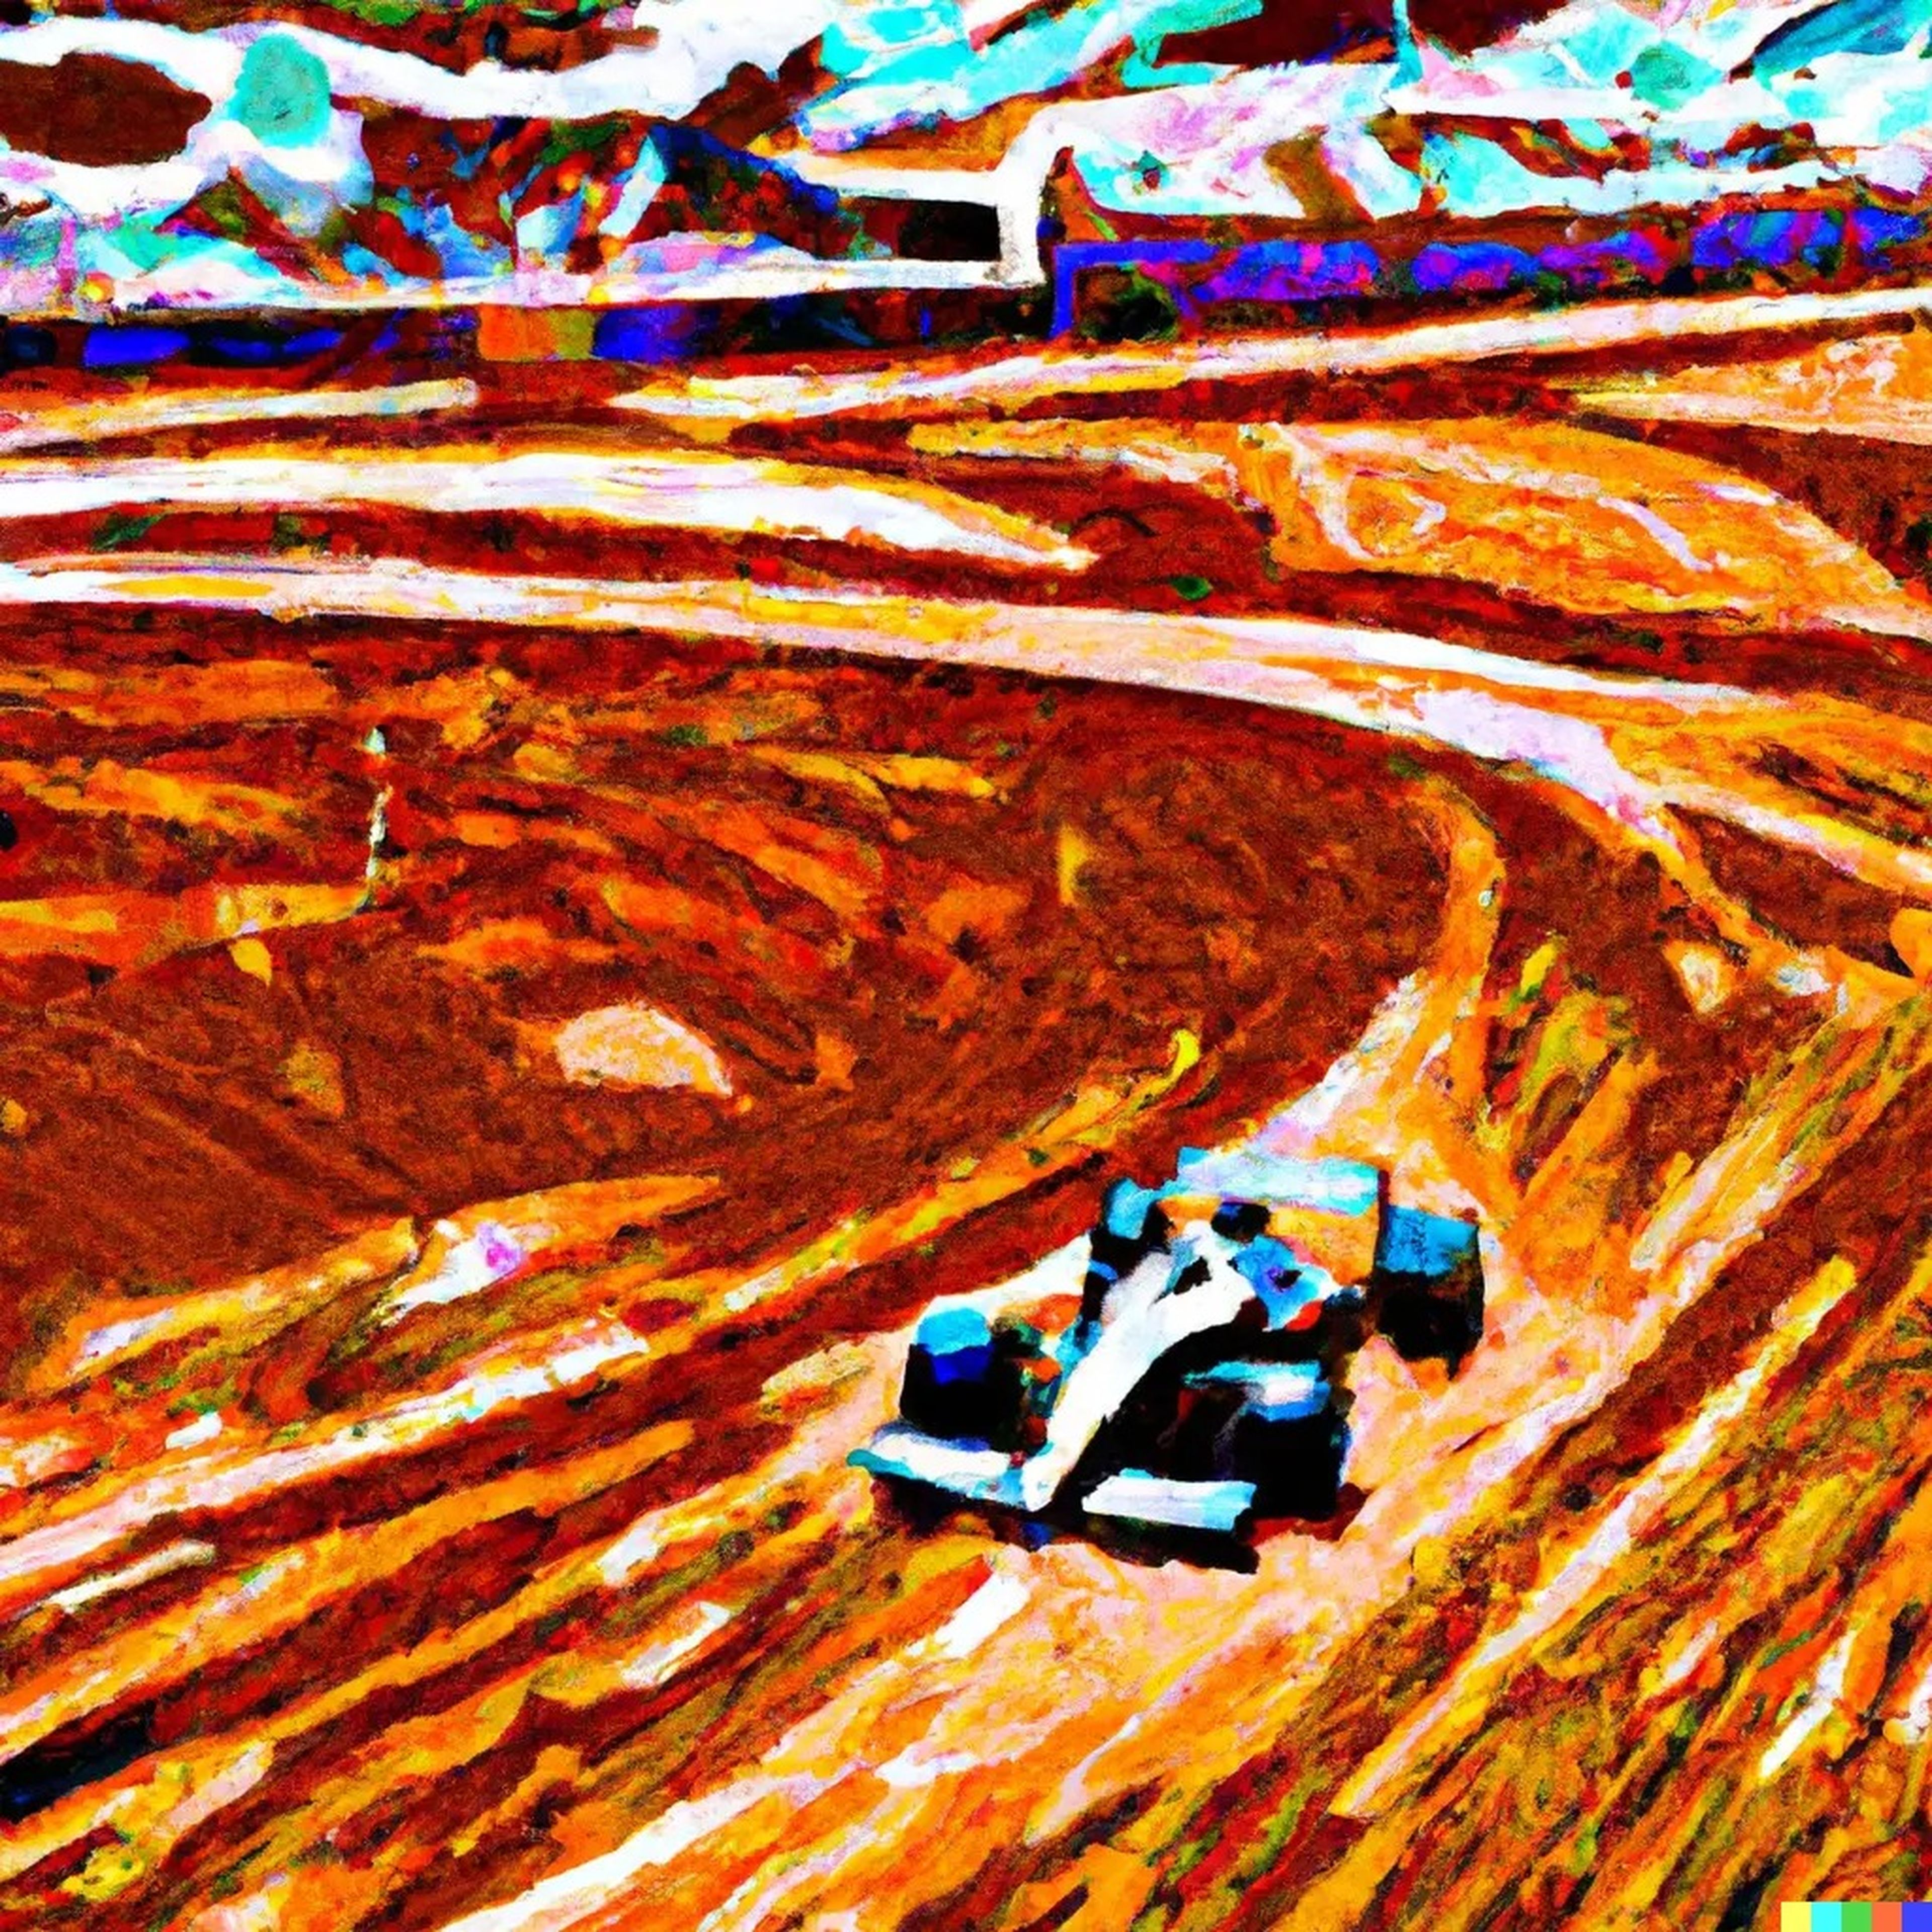 Imagen generada por la IA de DALL-E de "un cuadro al estilo Van Gogh de un coche de Fórmula 1 conduciendo en Marte".